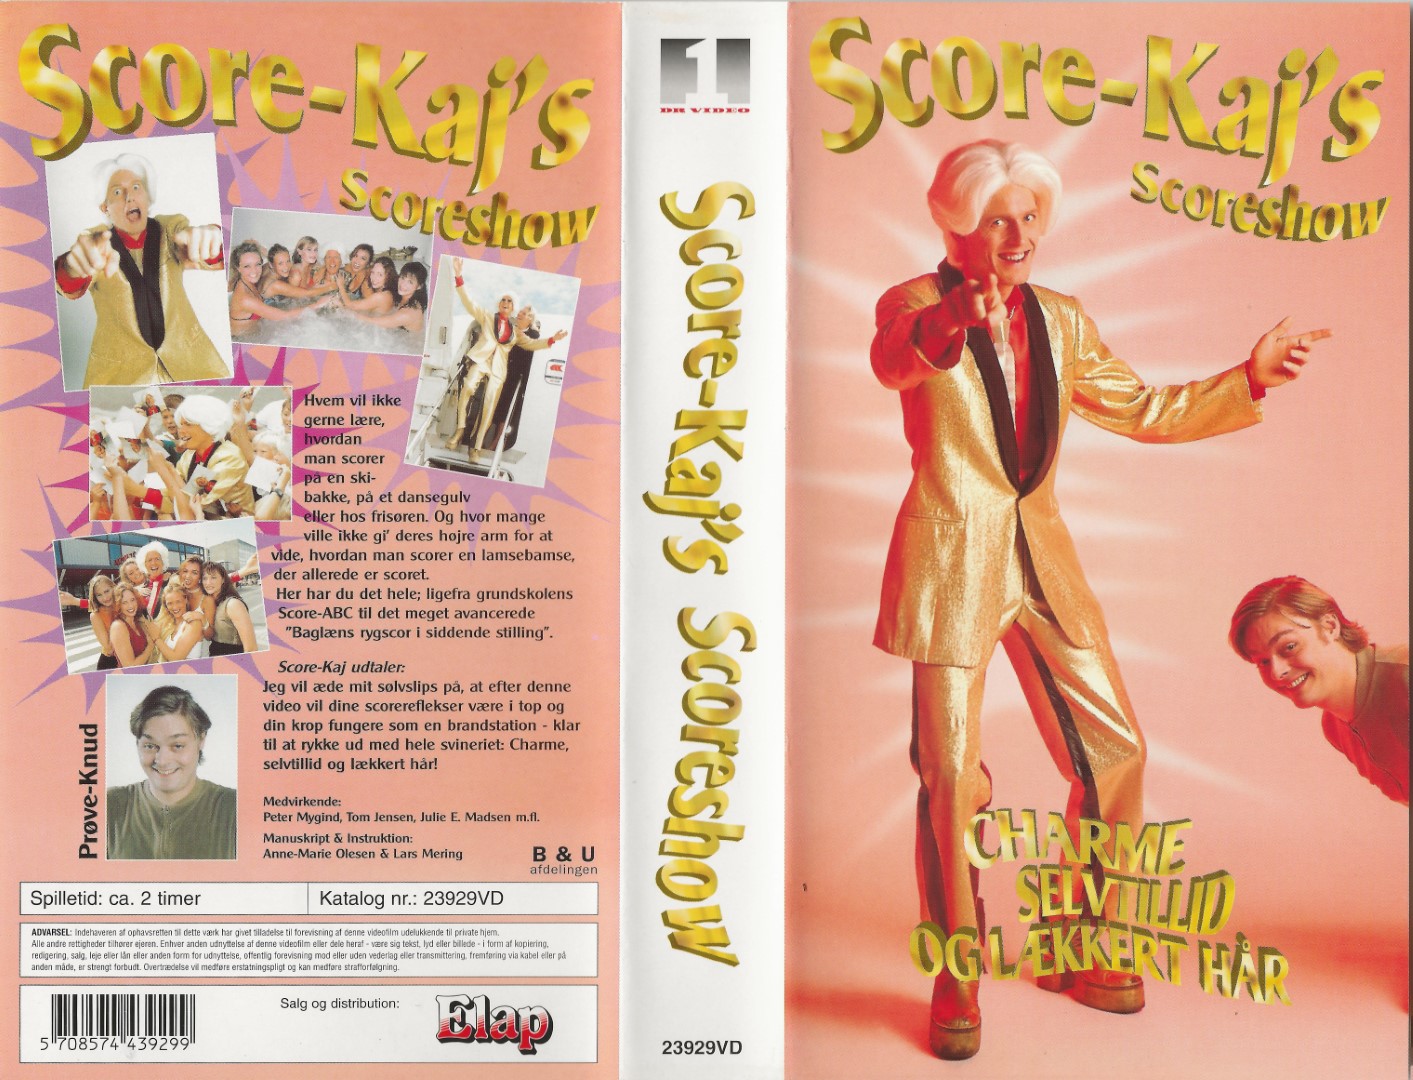 Score-Kajs Scoreshow - Charme, selvtillid og lækkert hår  VHS Elap Video 1995